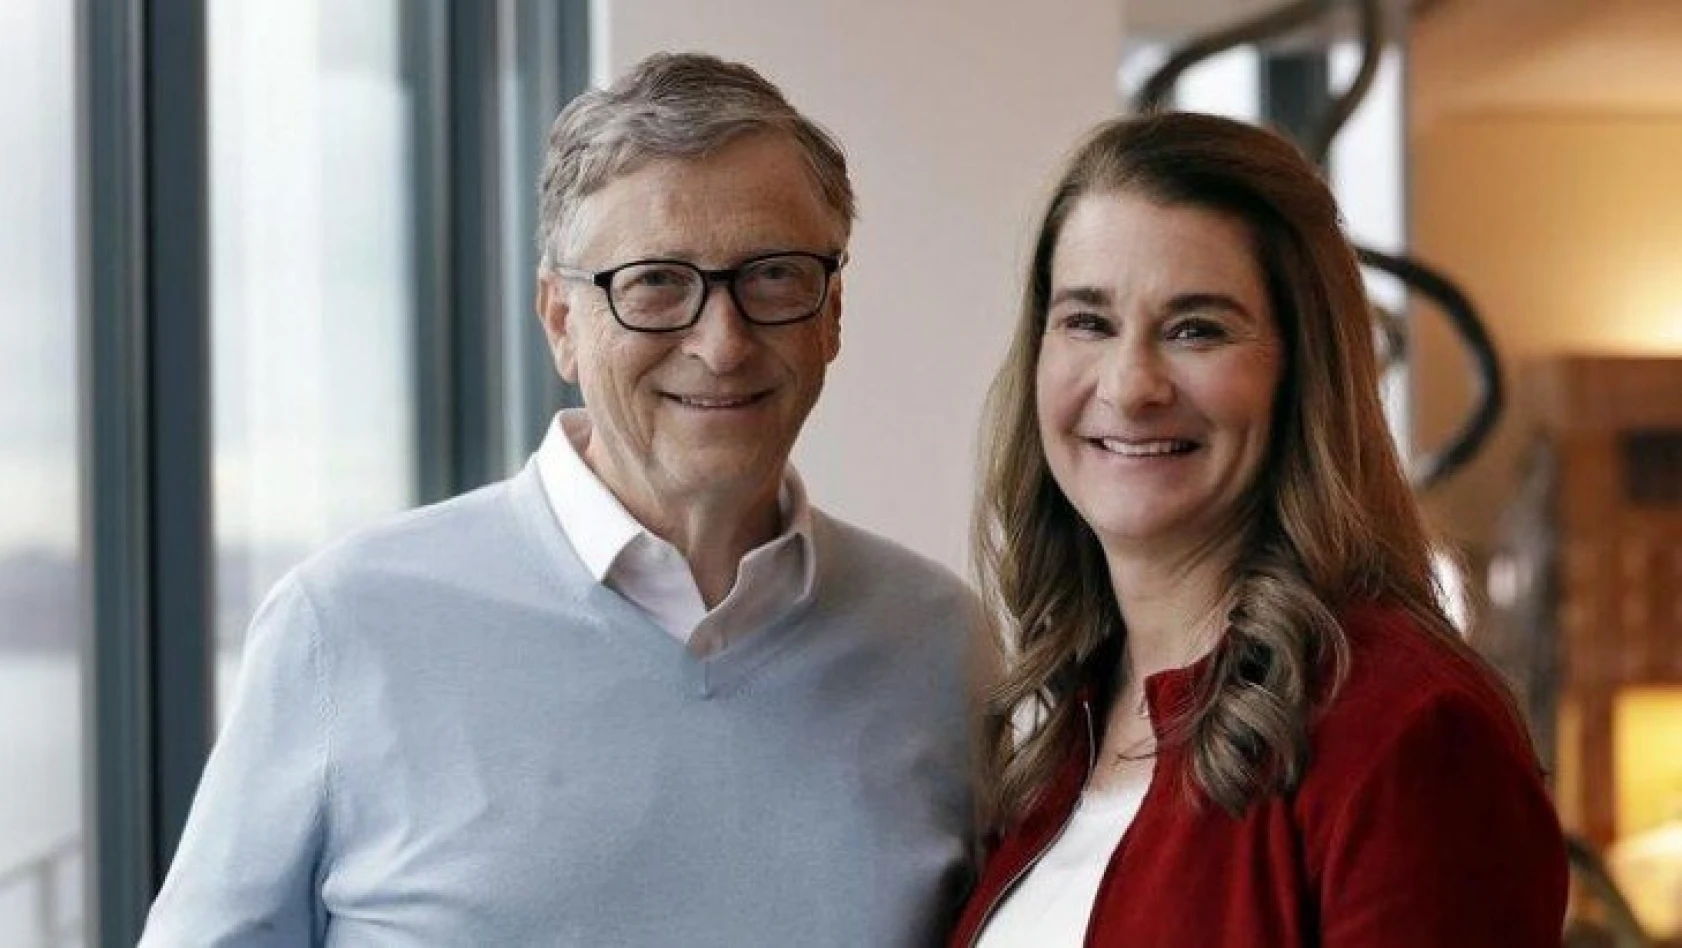 Microsoft'un kurucusu Bill Gates, eşi Melinda Gates'ten boşanıyor